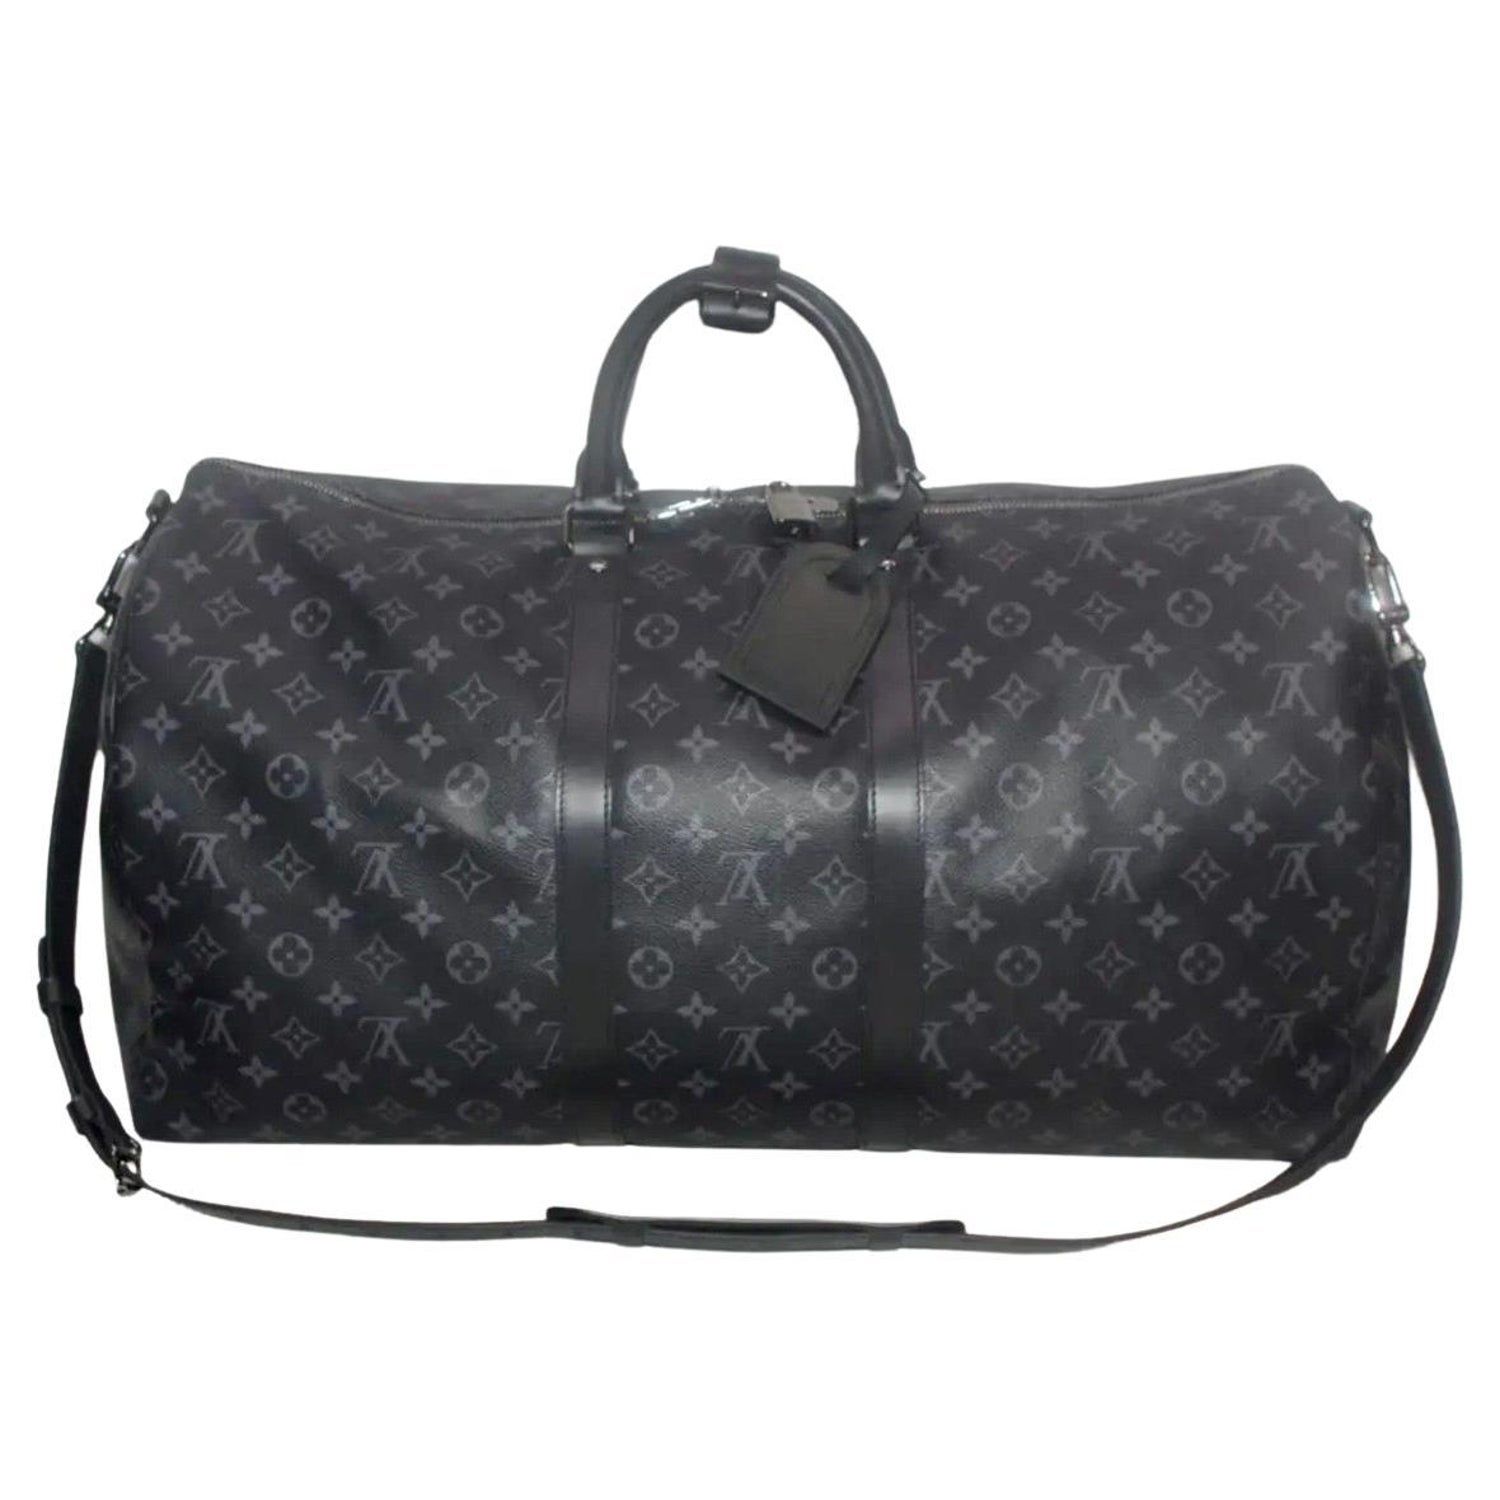 Louis Vuitton Black Leather ID / Luggage Name Tag & Poignet Set